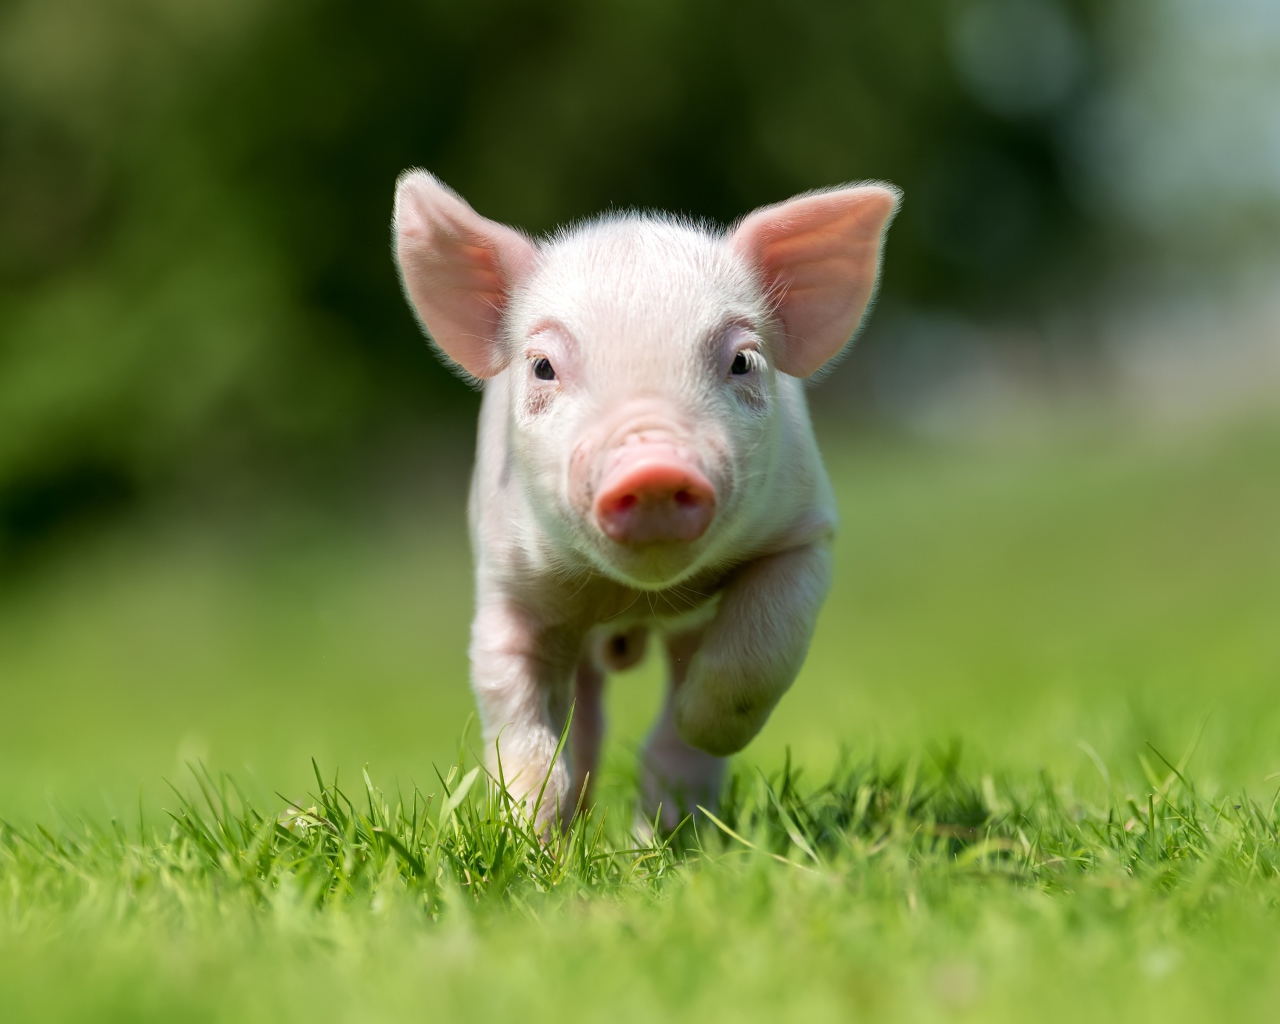 Little pink pig running through green grass